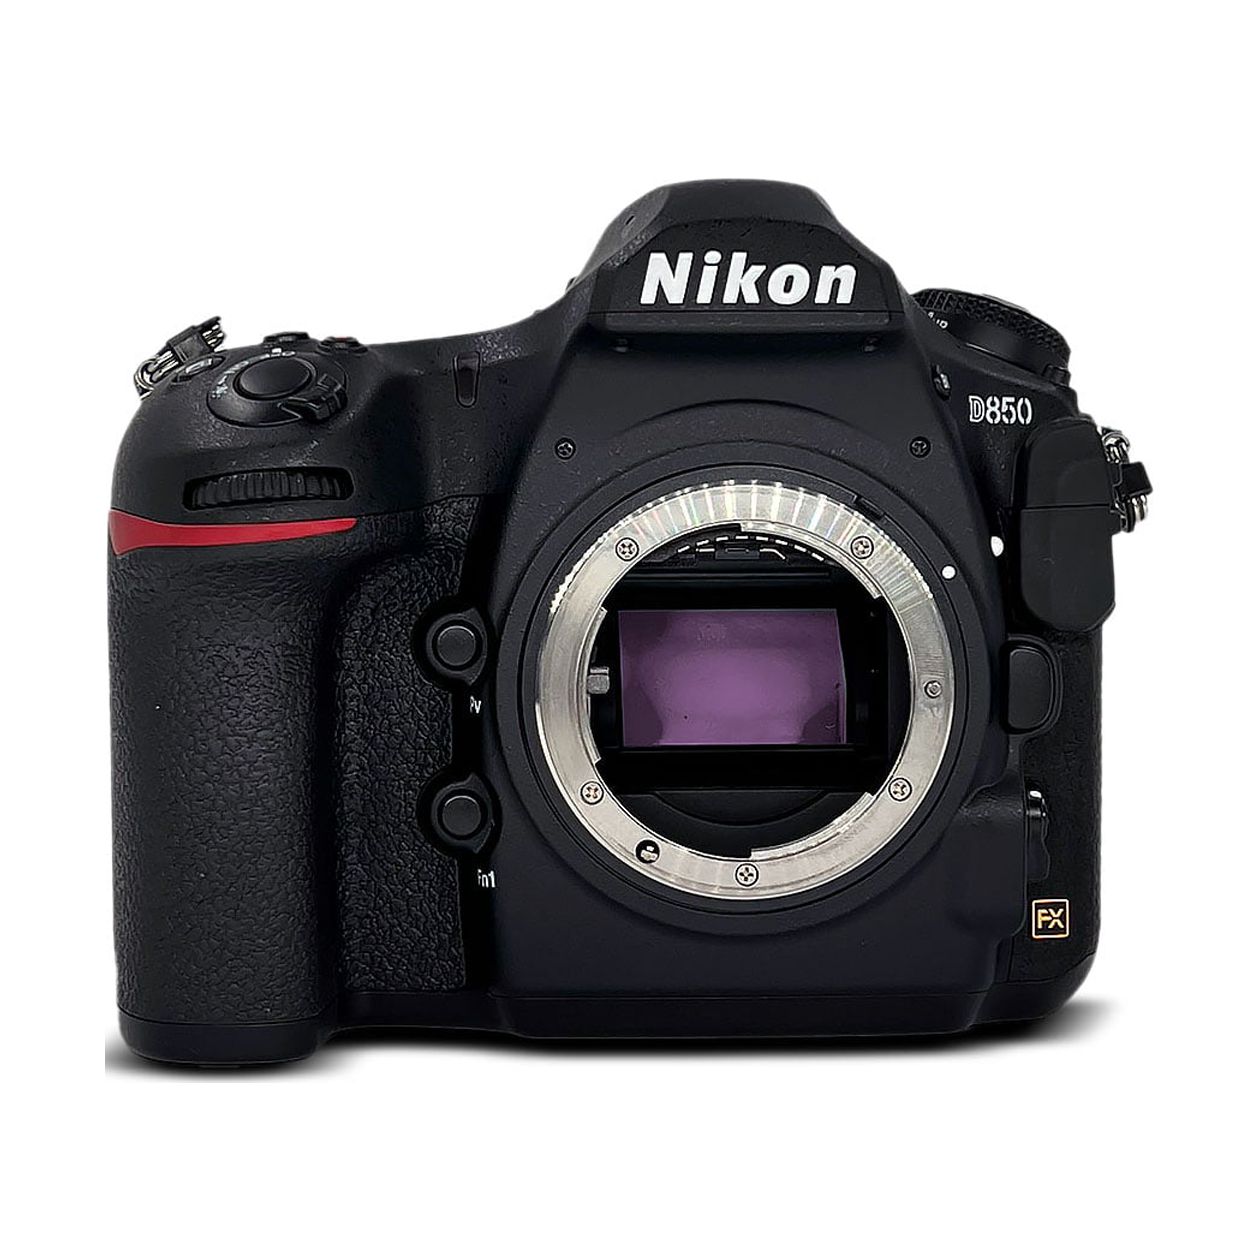 Nikon D850 DSLR Camera in Black (Body Only) - image 2 of 6